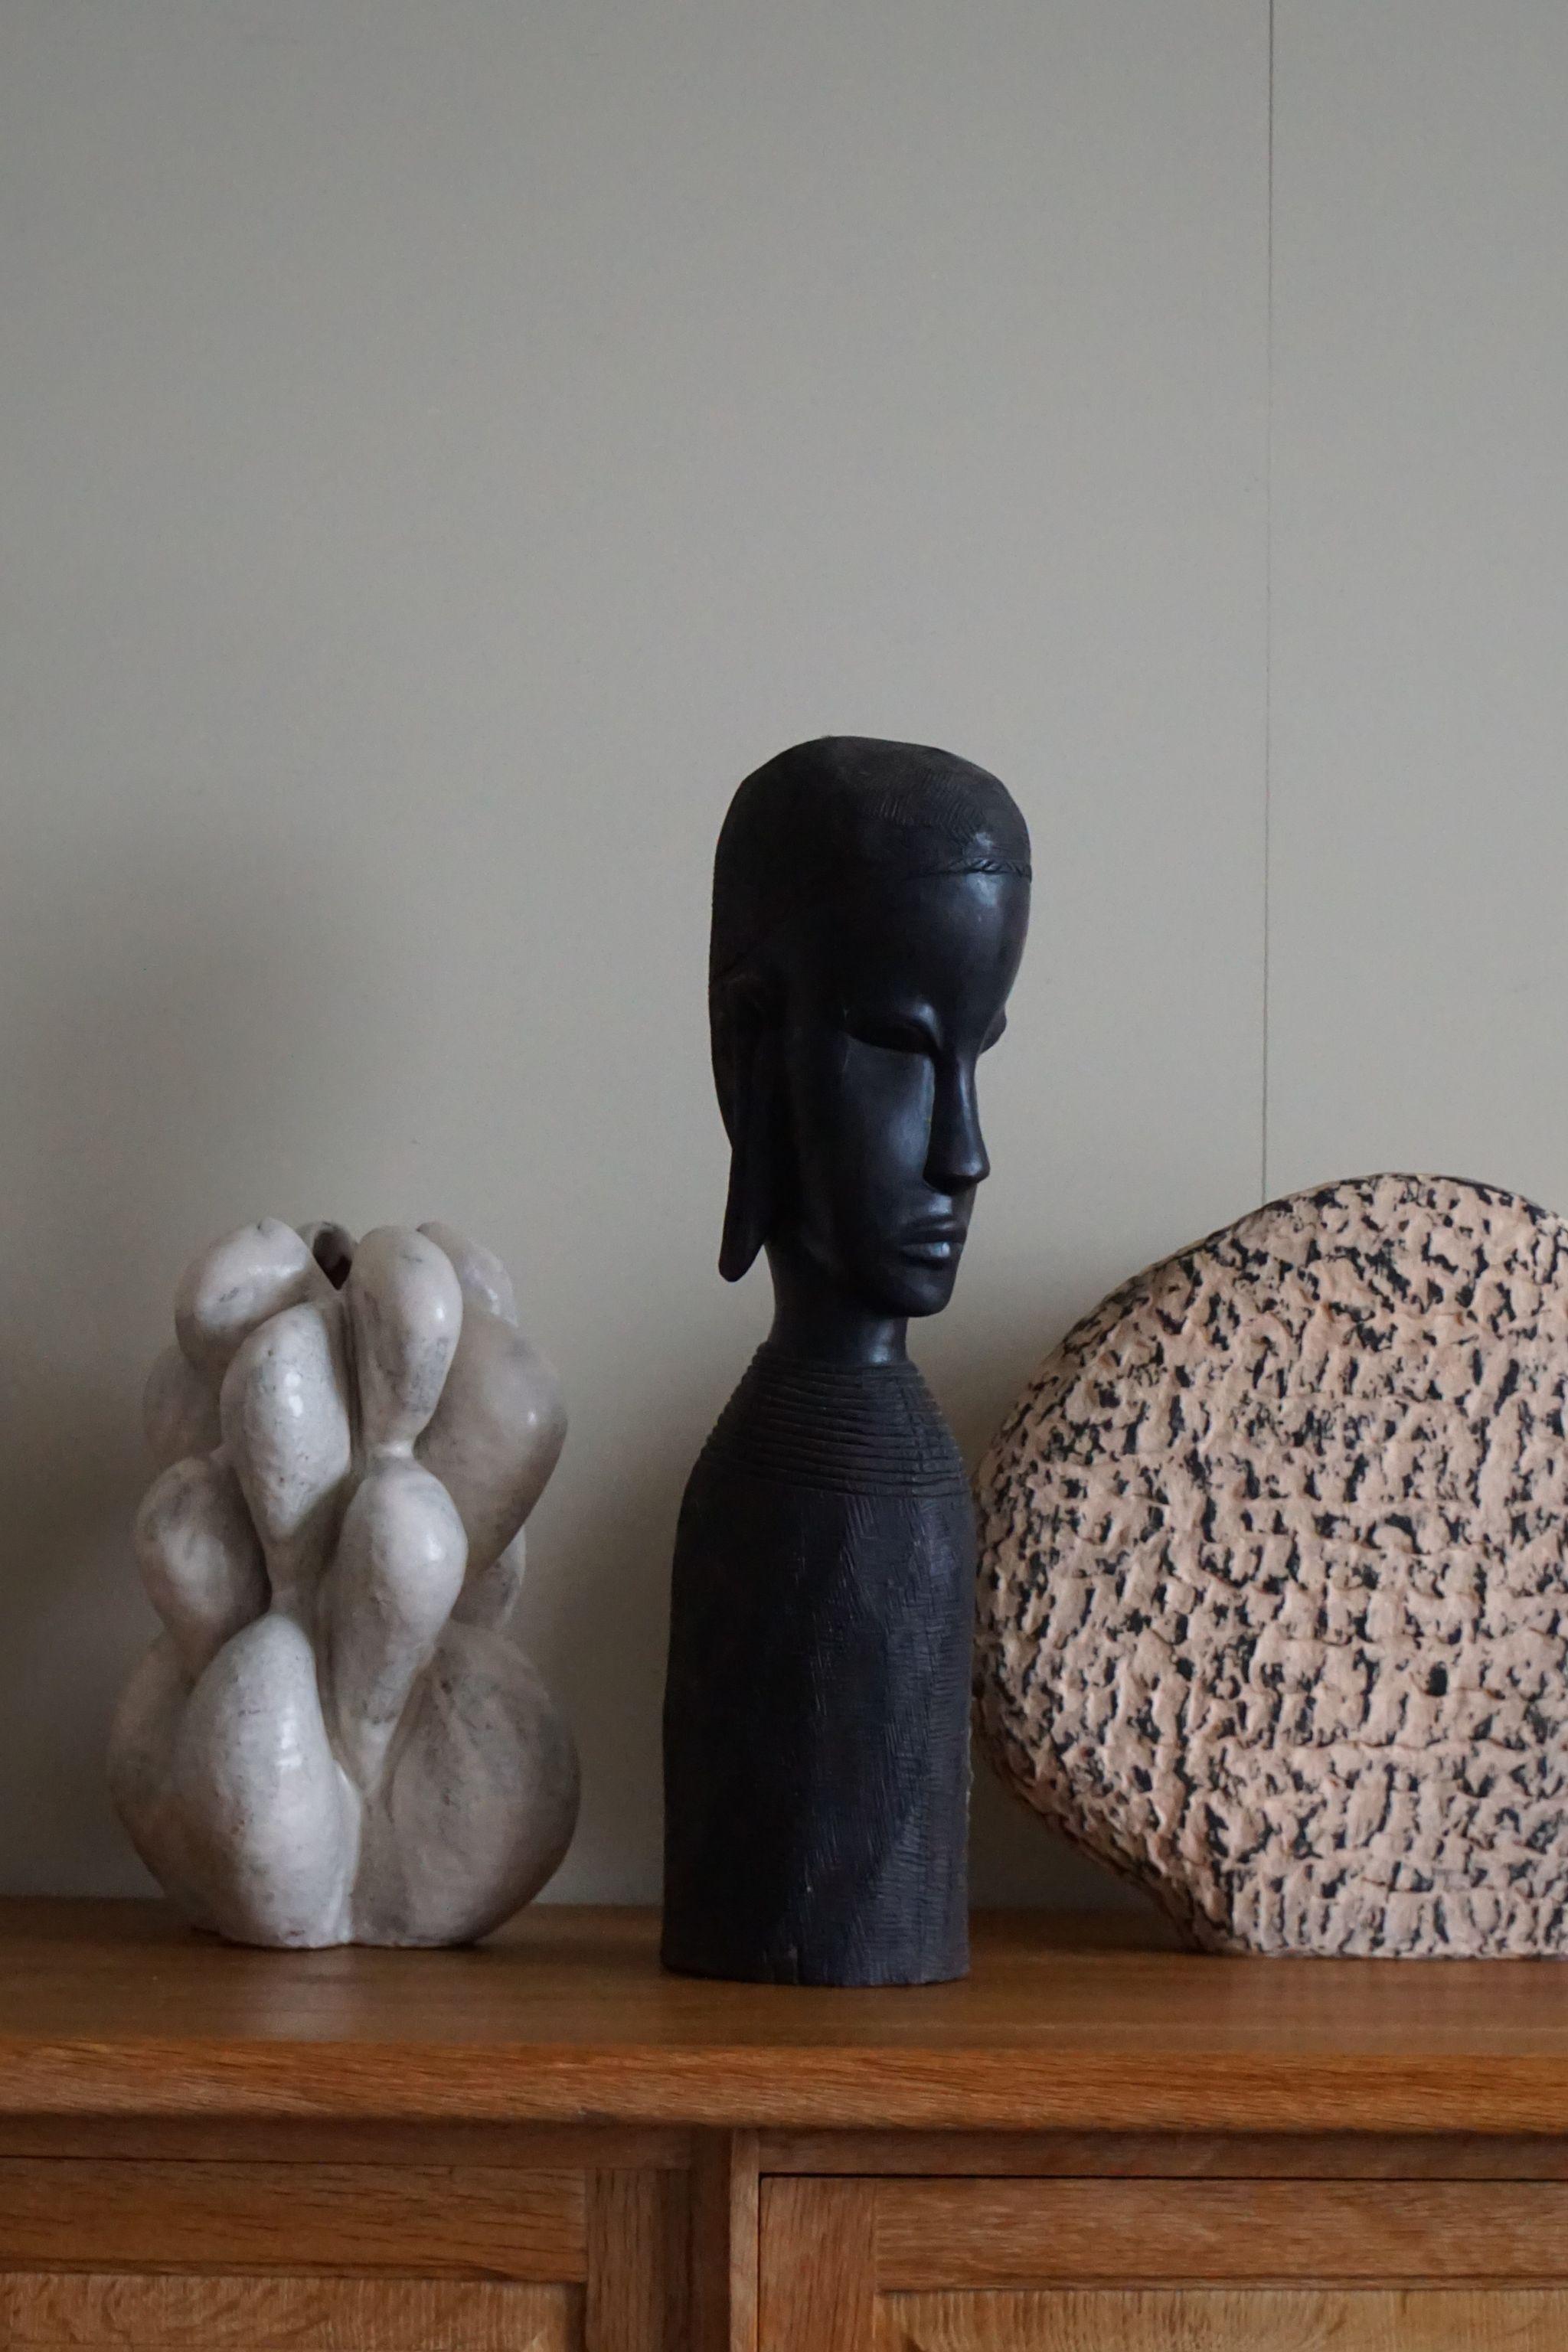 Une belle sculpture / figure en bois sculptée à la main. Fabriqué en Afrique dans les années 1940-50,. Acheté à un collectionneur d'art africain.
Belle patine et bon état général. Cette figure s'adapte aux intérieurs modernes, elle peut également